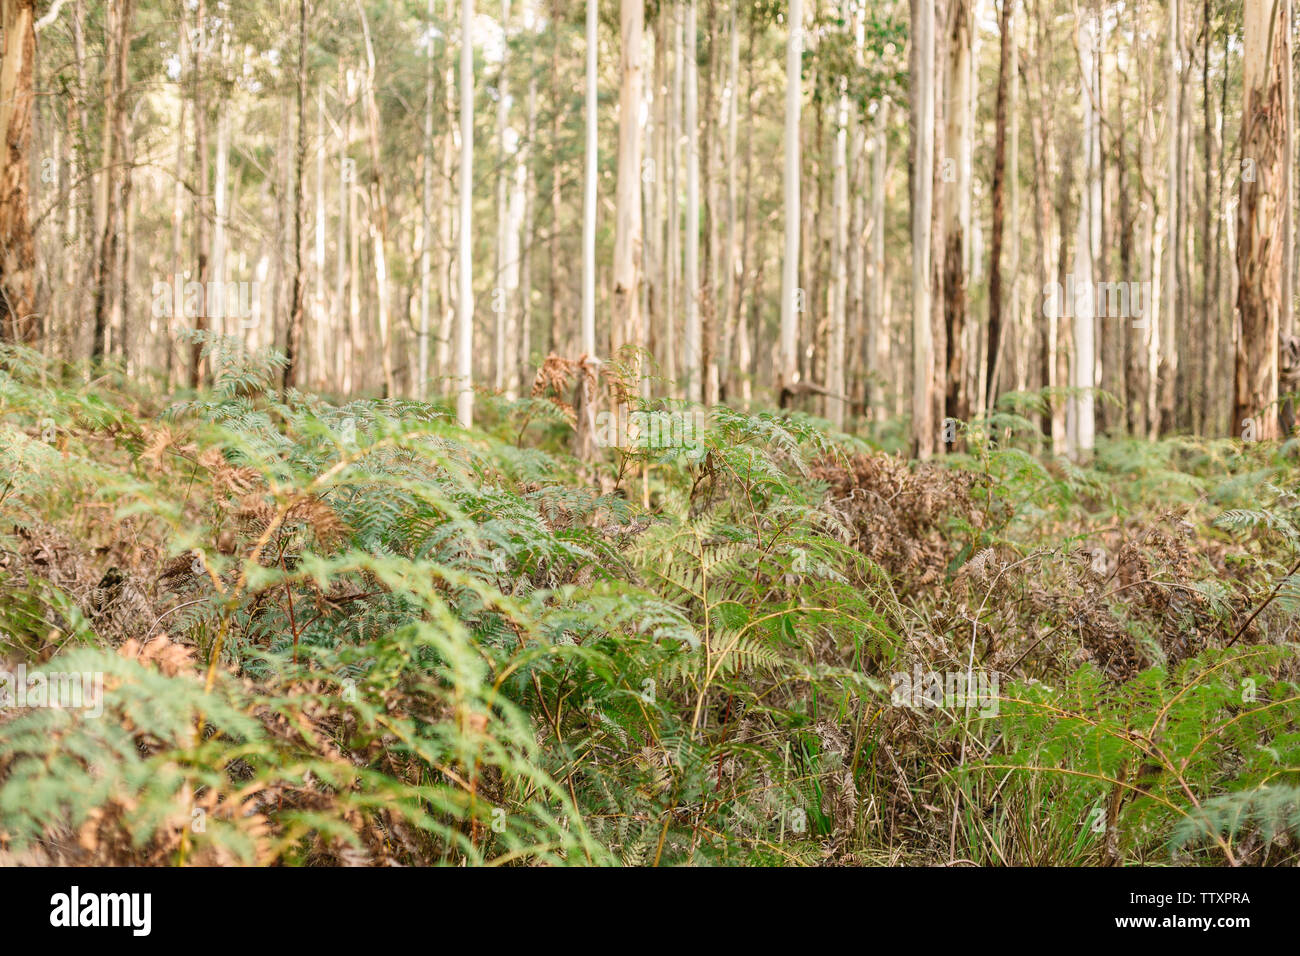 Immagine in una foresta con un close up di felci e alberi densa in background Foto Stock